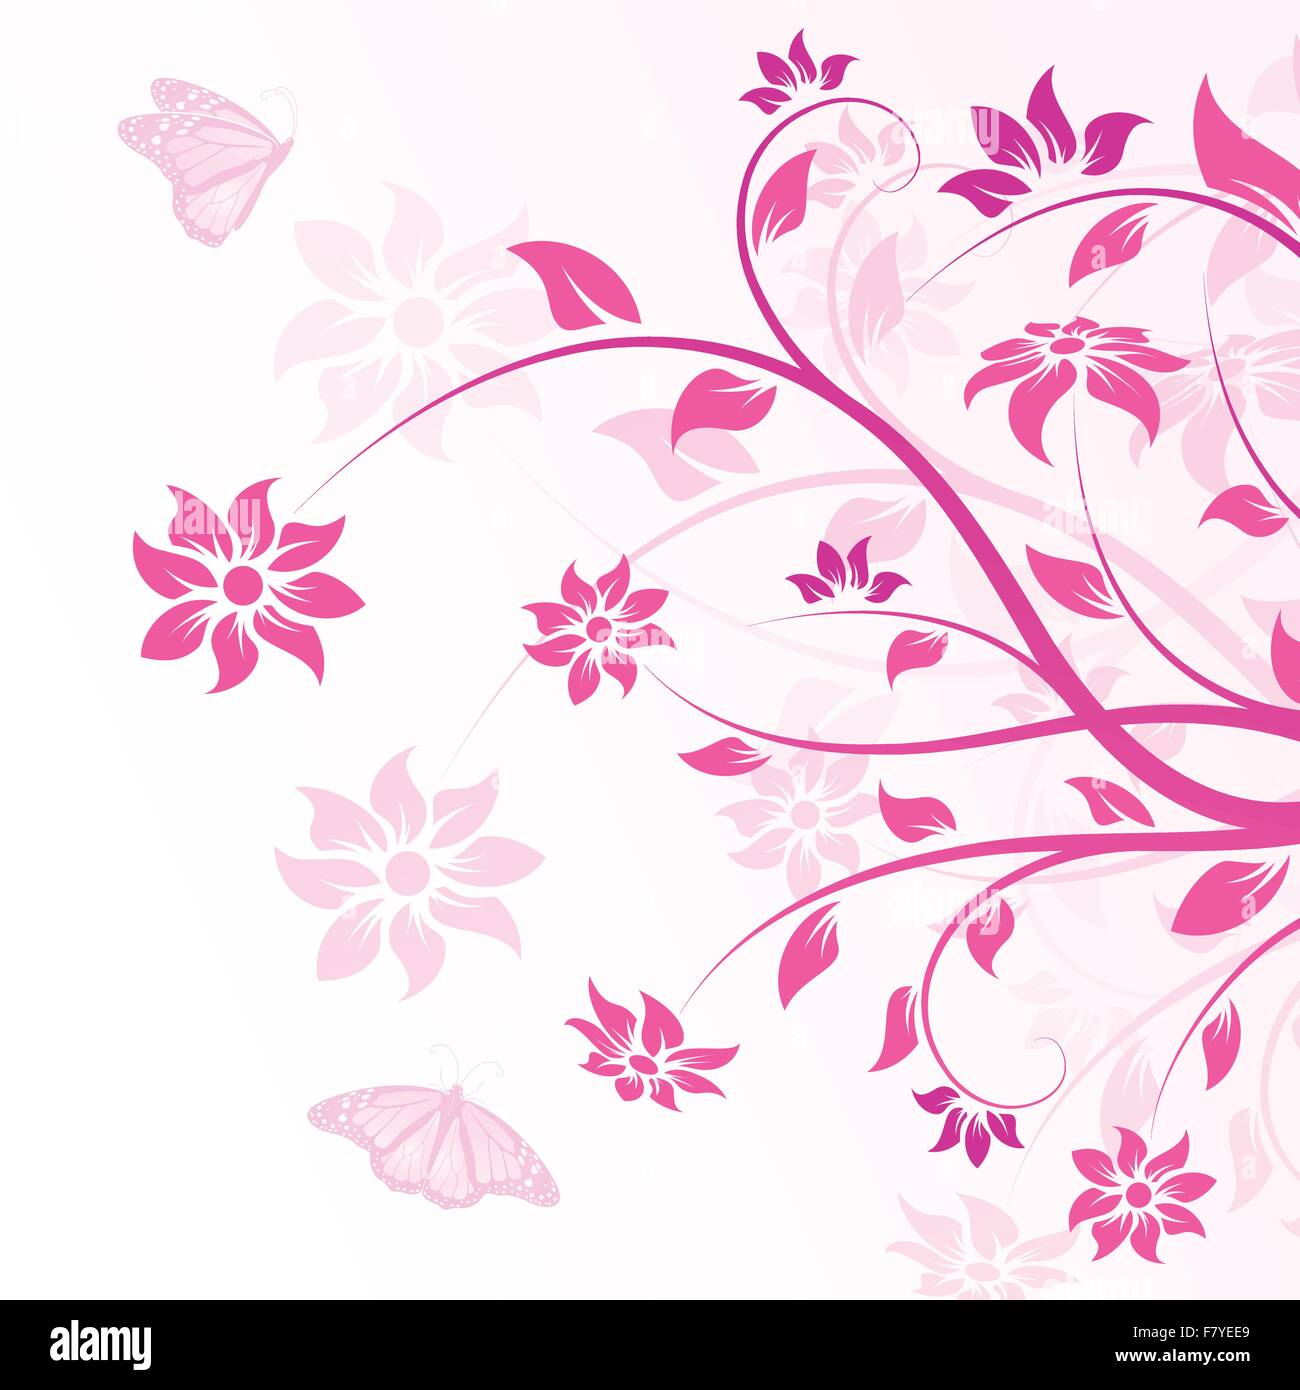 Vector flowers in pink Stock Vector